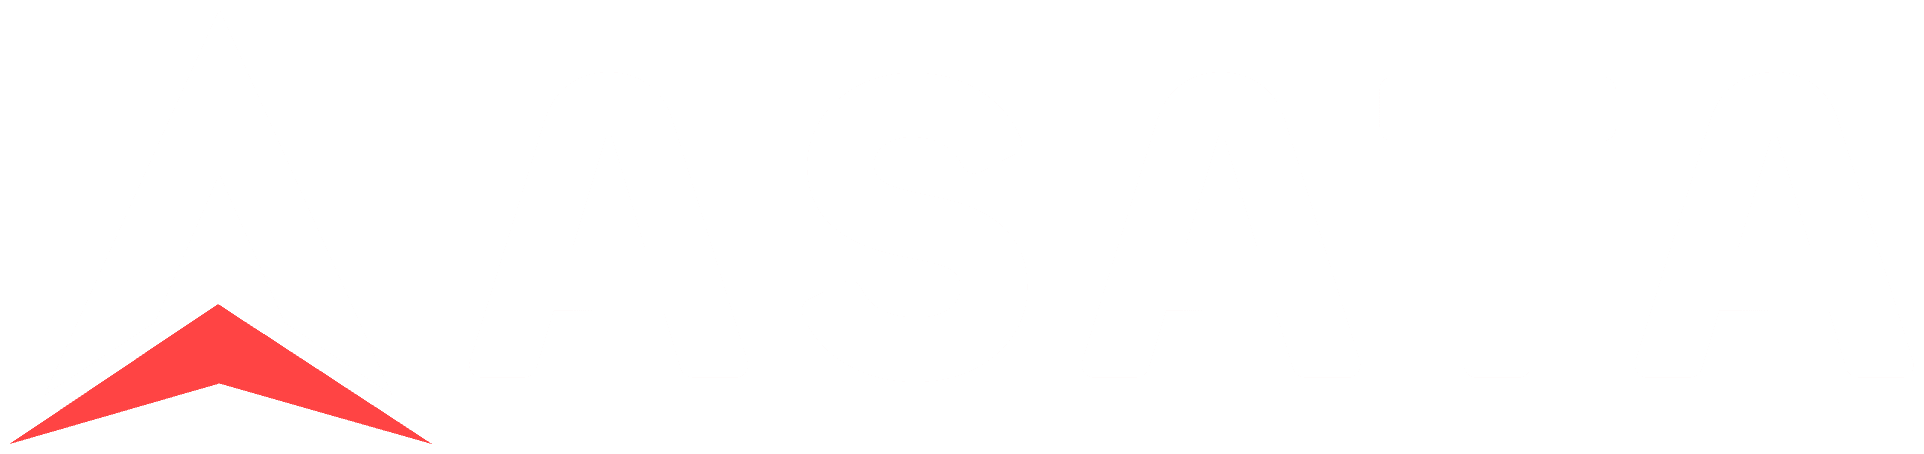 asata_logo_inverted_1